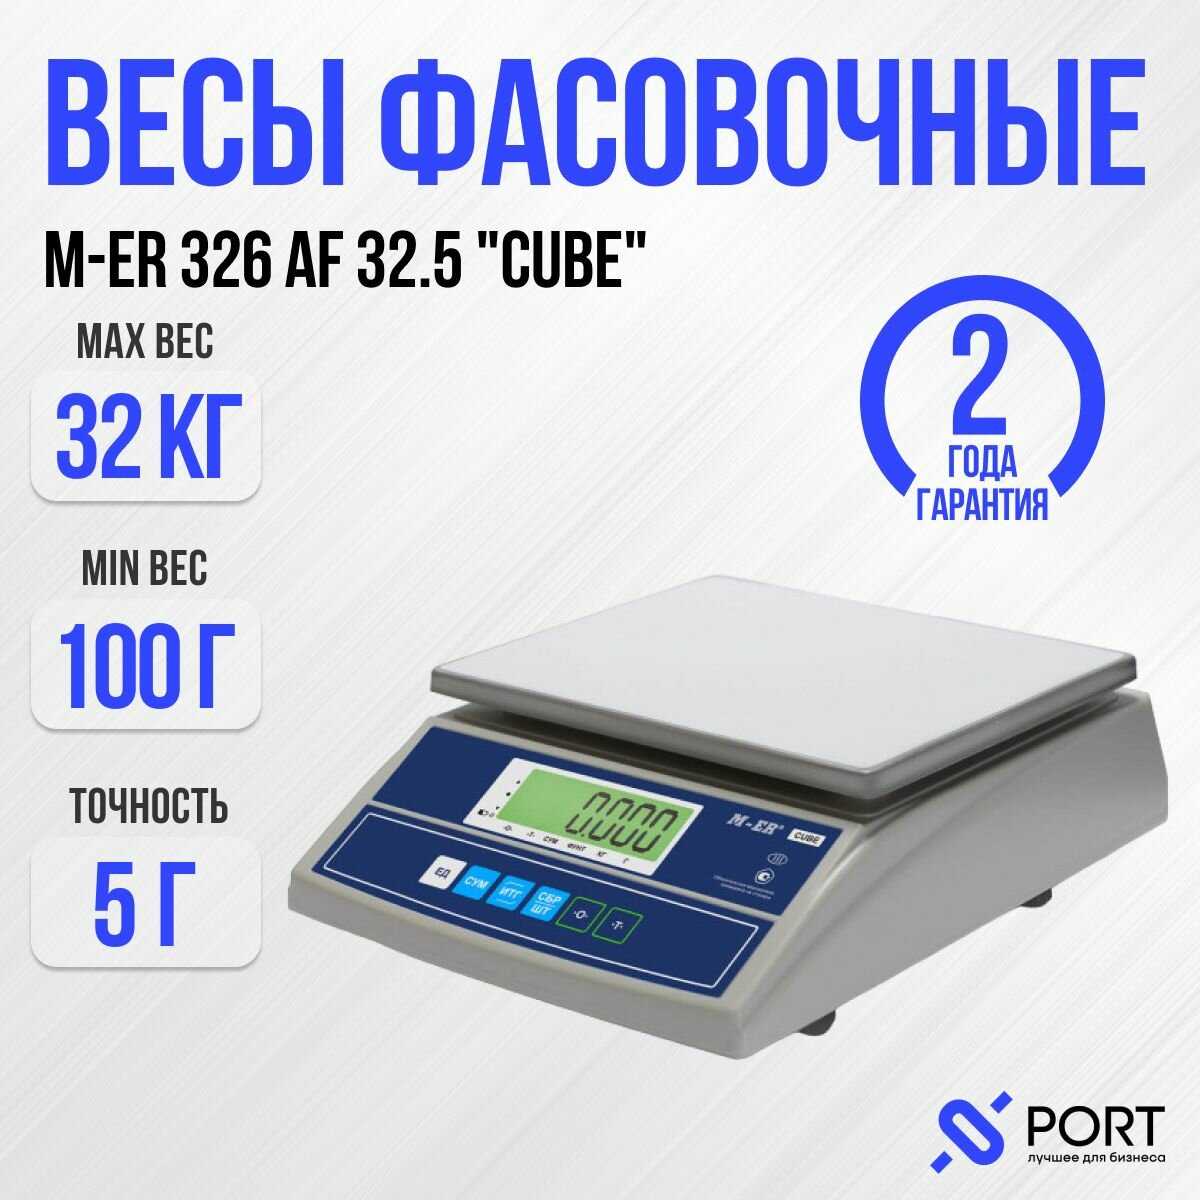 Весы торговые фасовочные M-ER 326 AF-32.5 "Cube", 32 кг